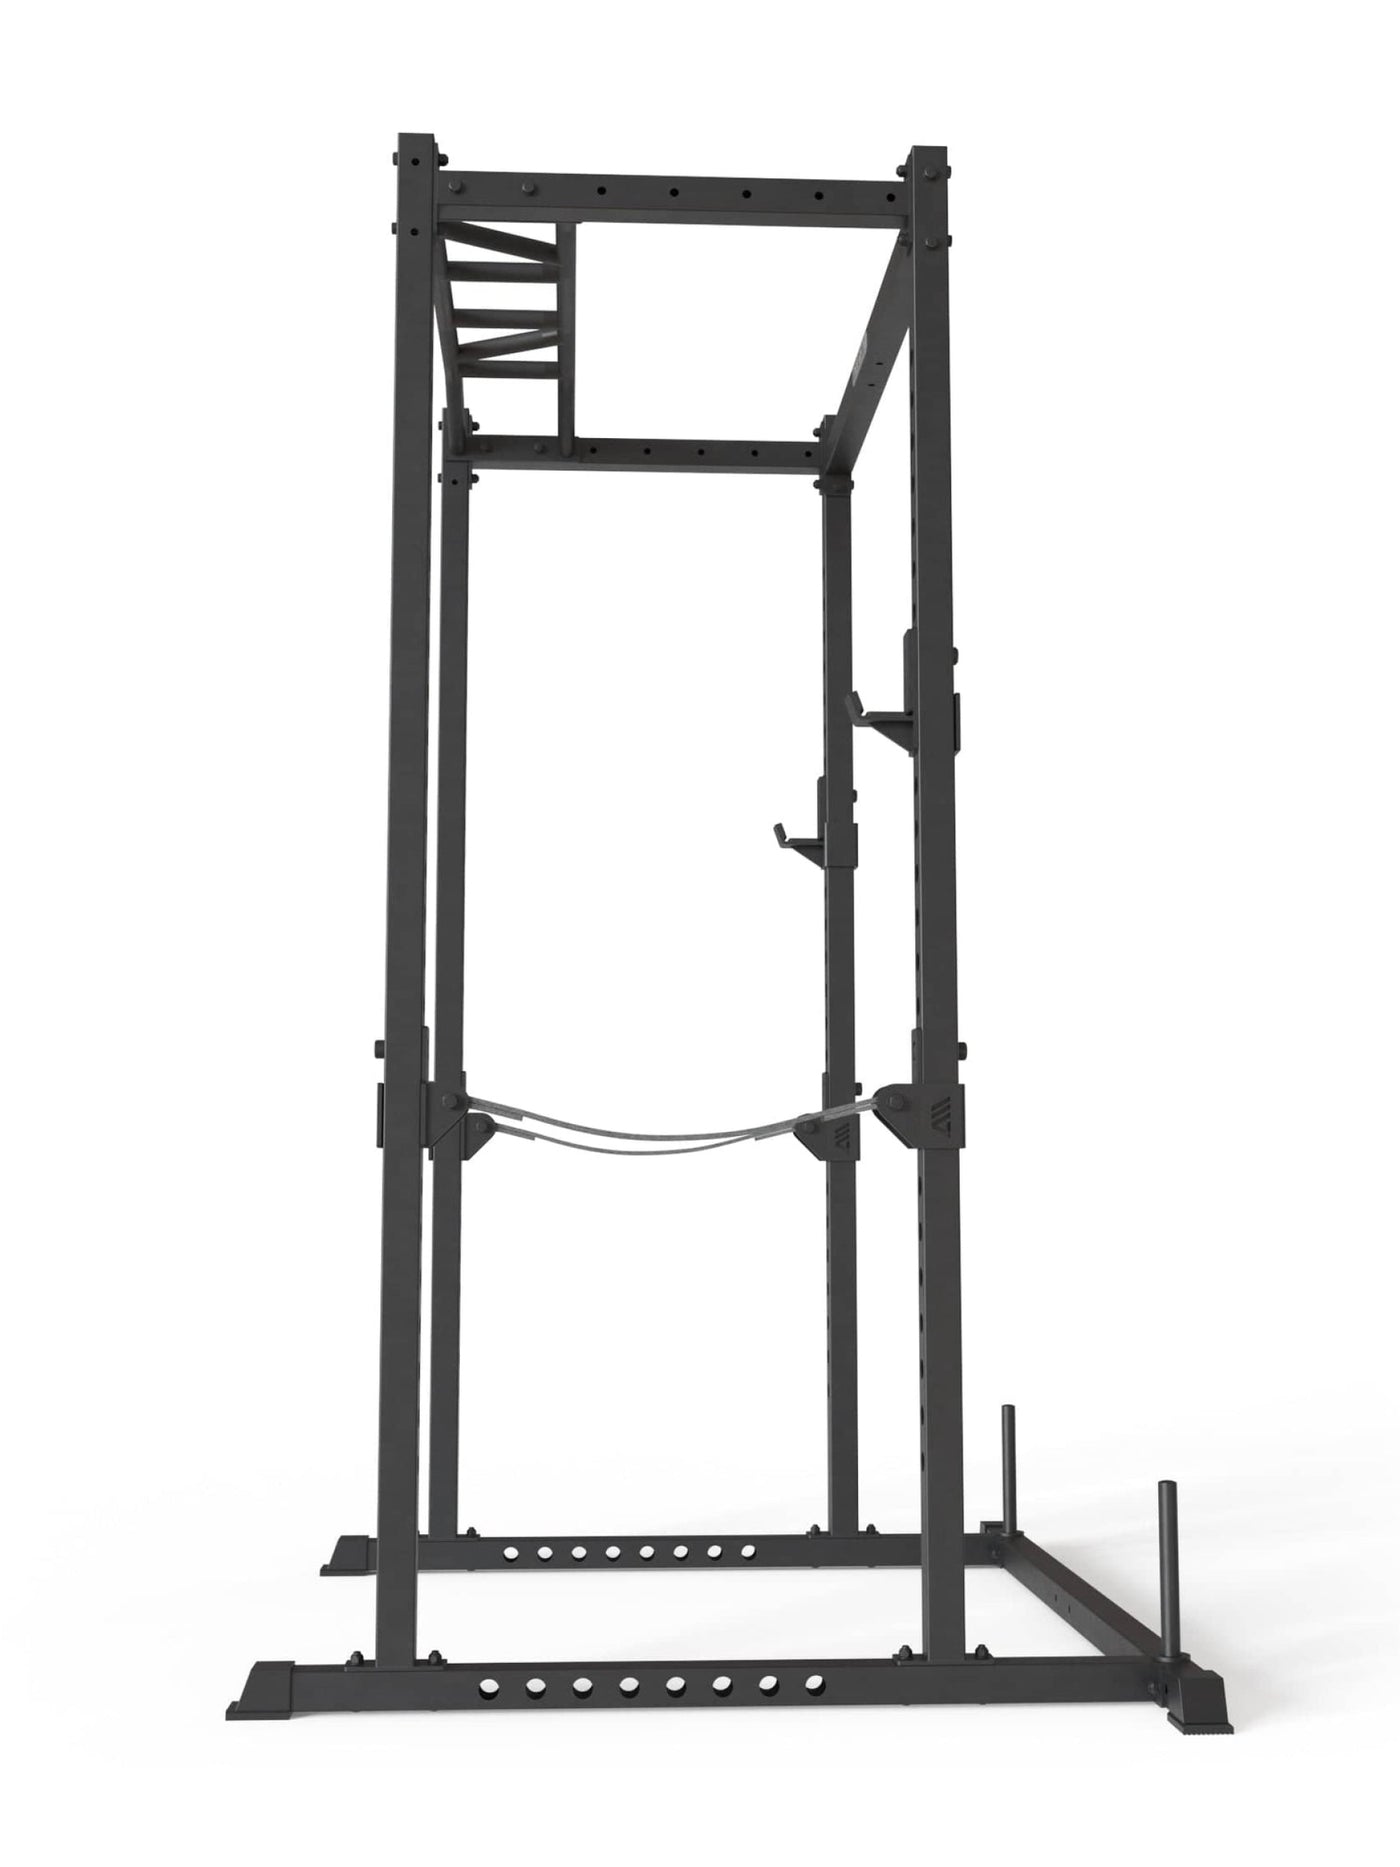 Power Cage R5 Base Käfig: Basiskäfig für Grundübungen,  #size_195-cm